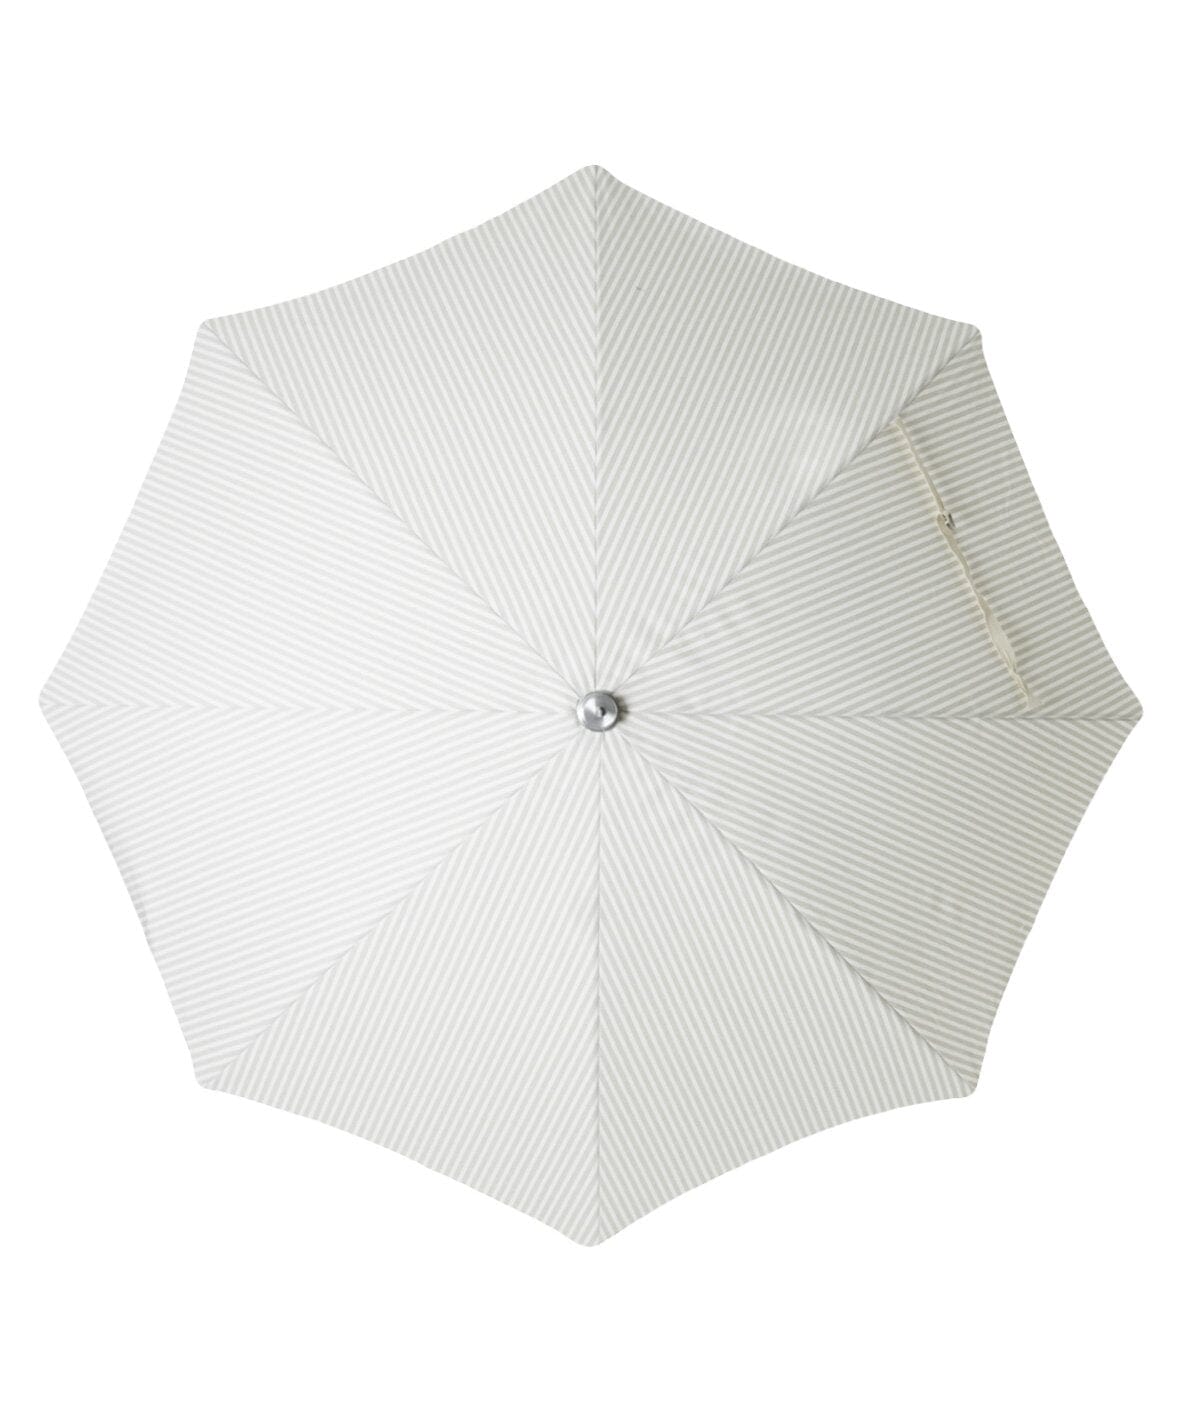 The Premium Beach Umbrella - Lauren's Sage Stripe Premium Umbrella Business & Pleasure Co 